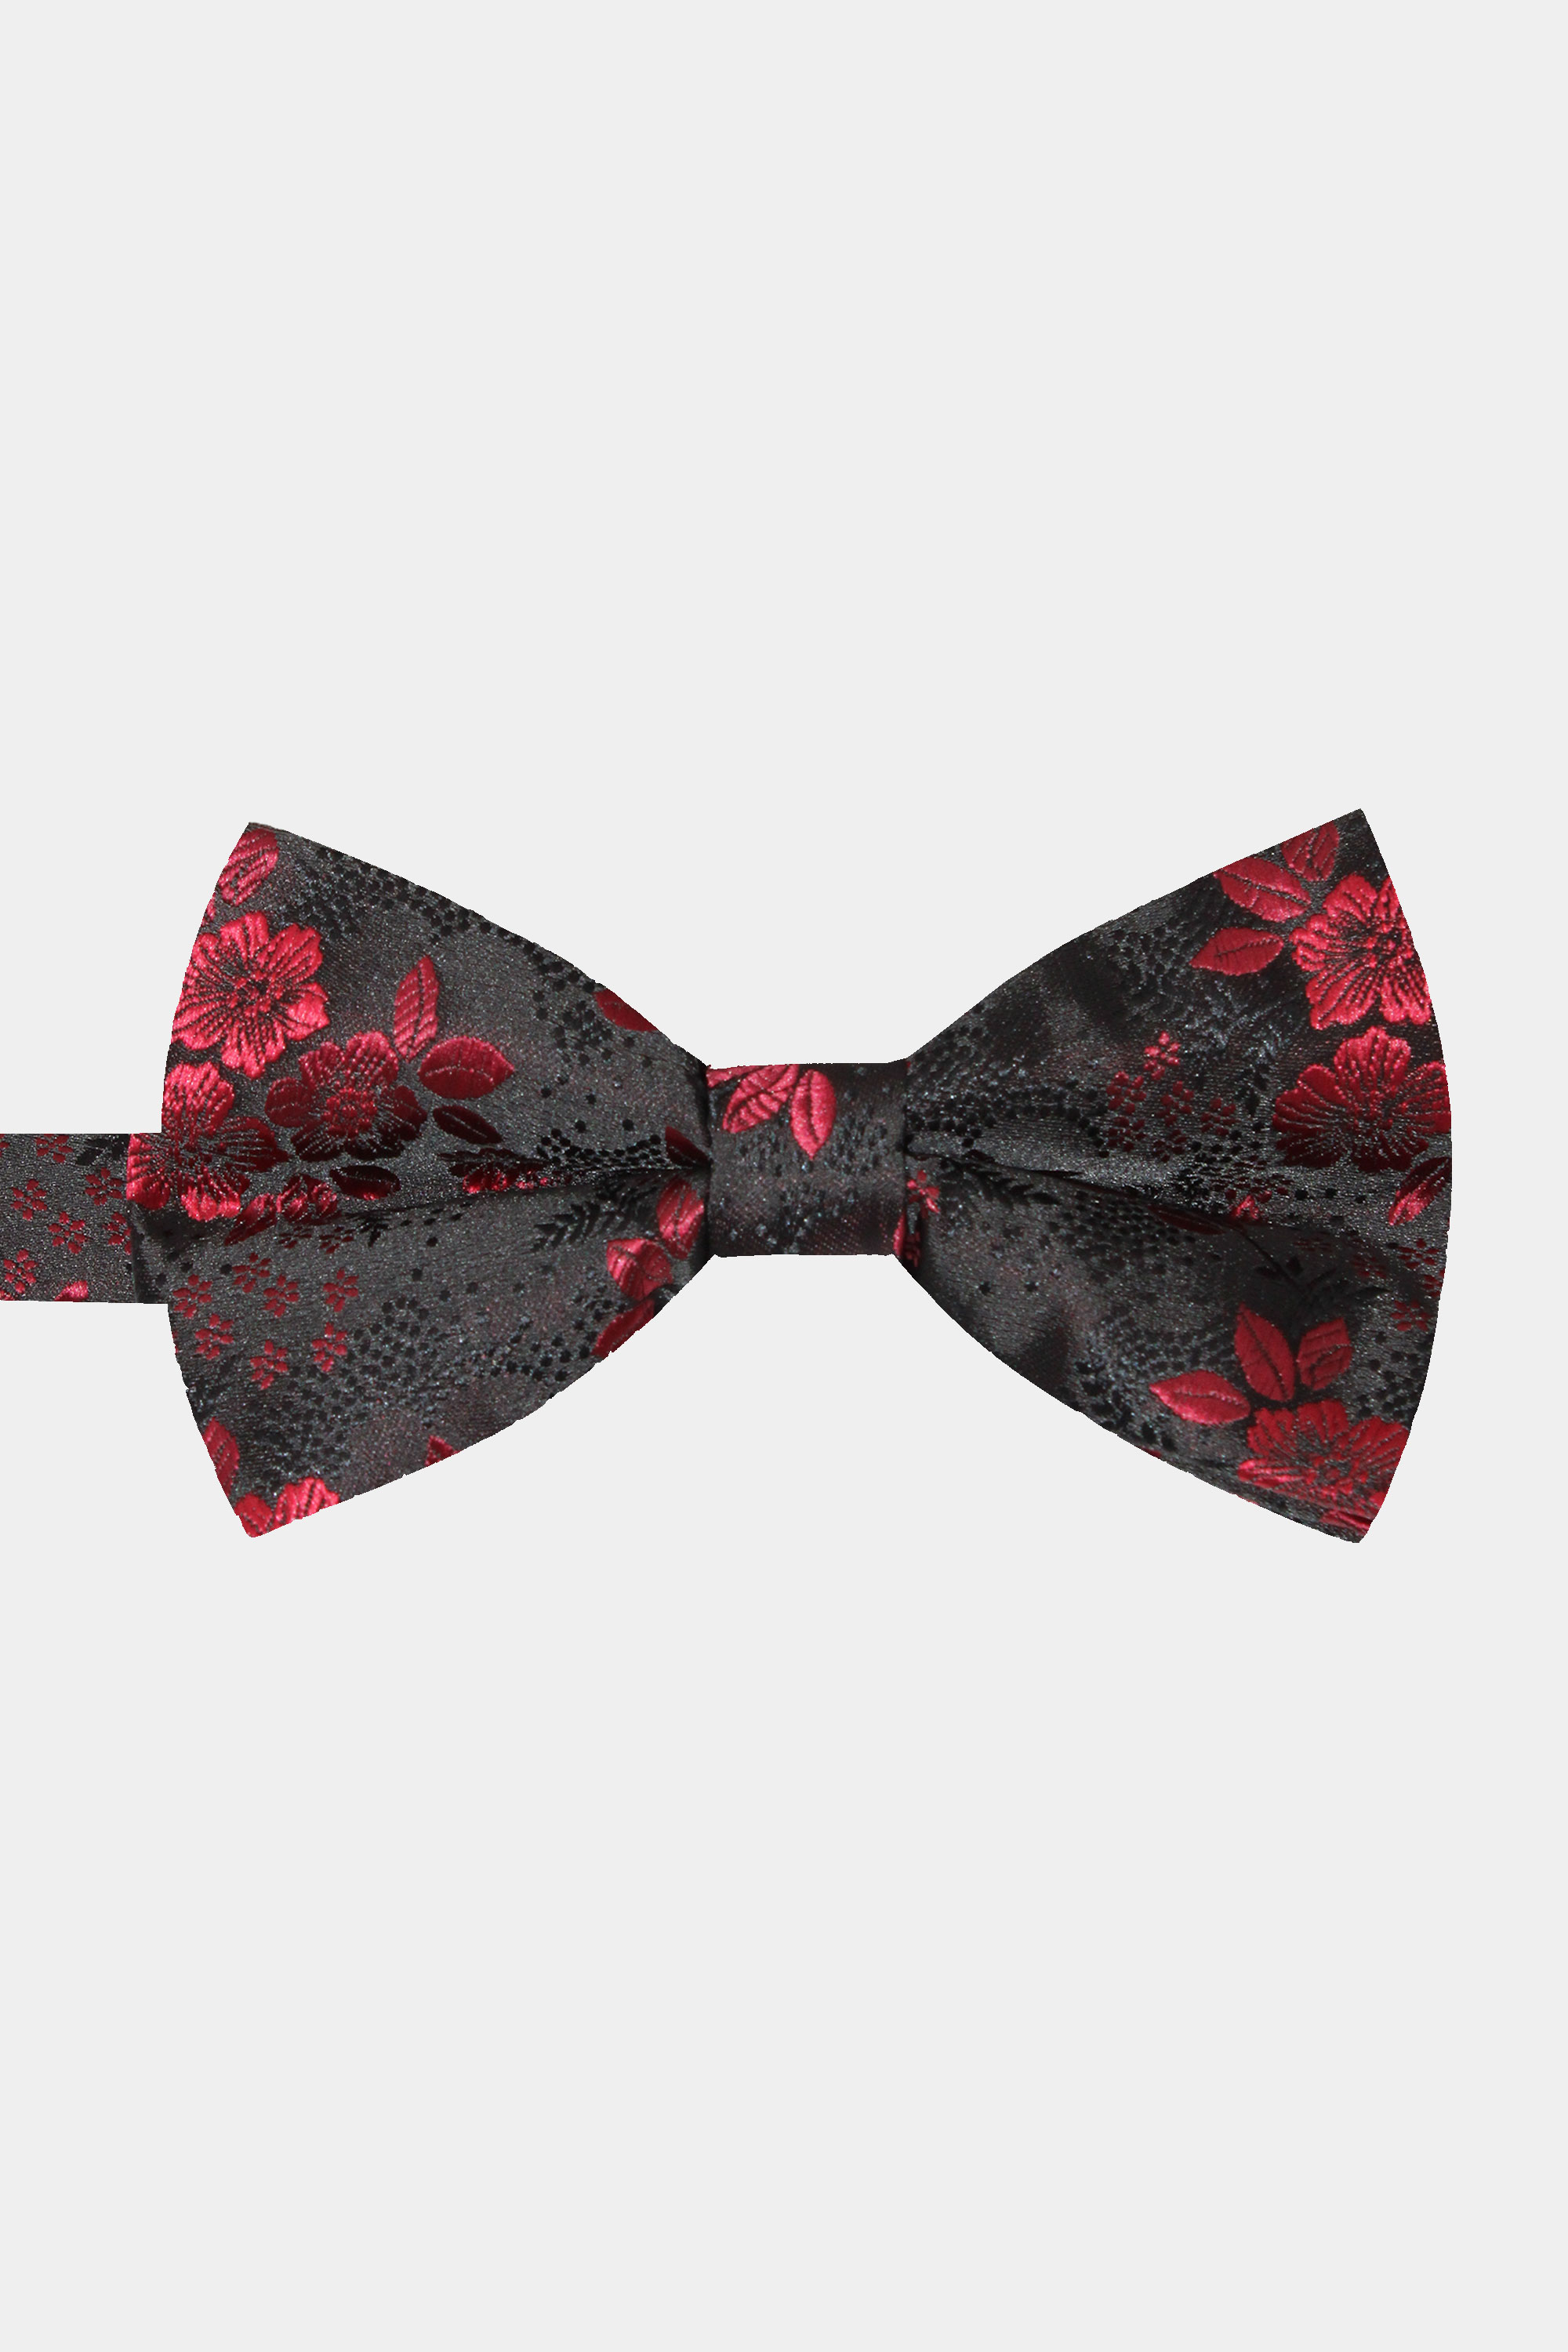 Burgundy floral bow tie roses pattern WINE elastic Y-back Suspenders Set 